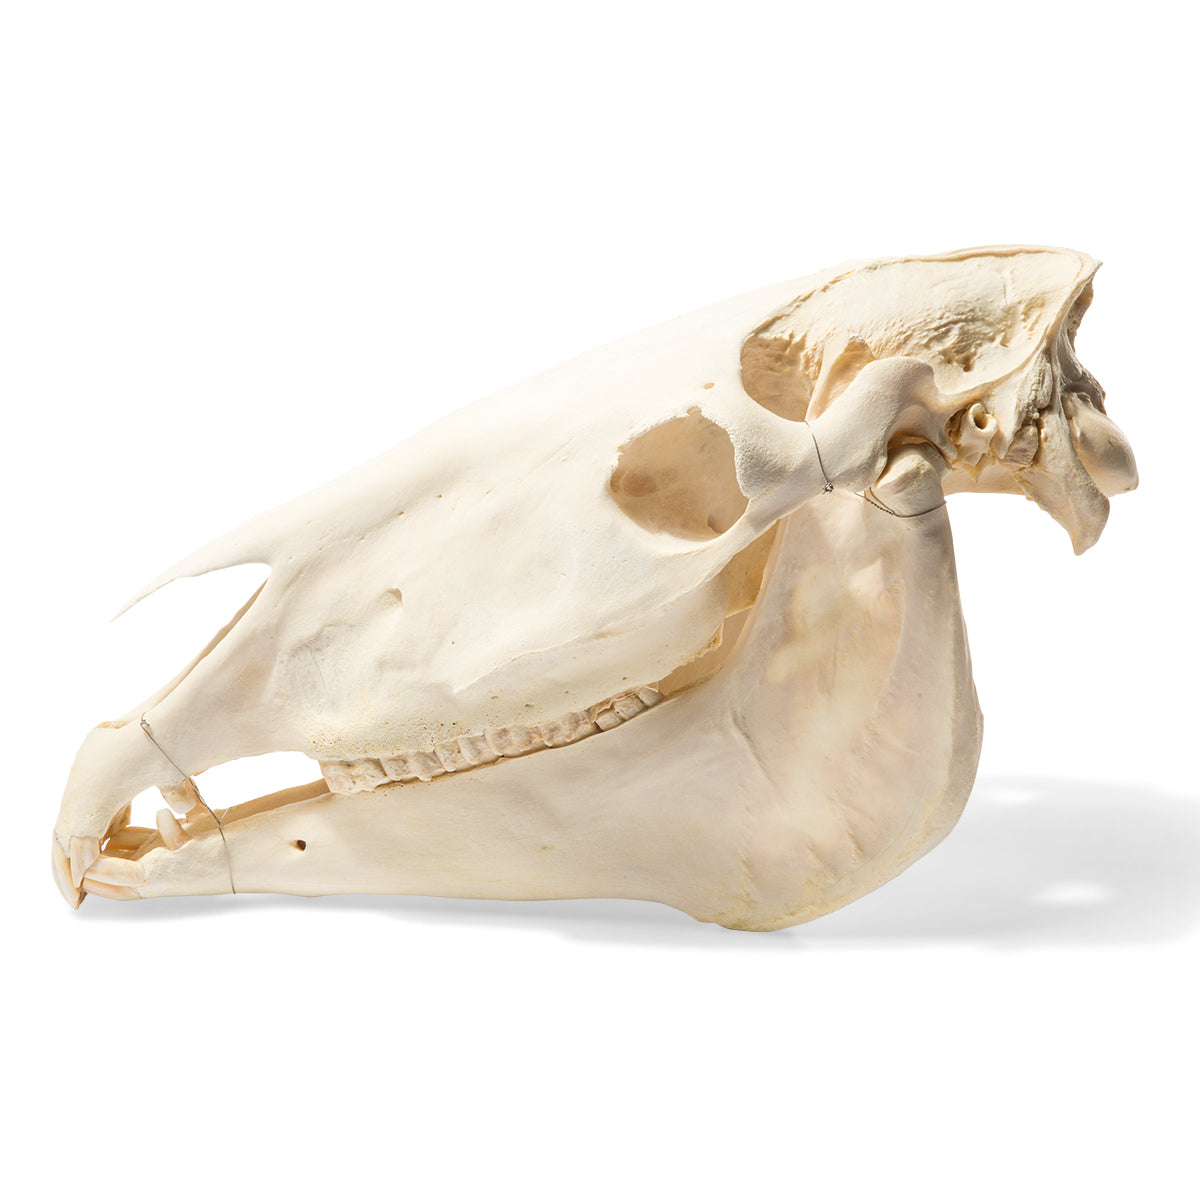 True horse skull (Equus ferus caballus)